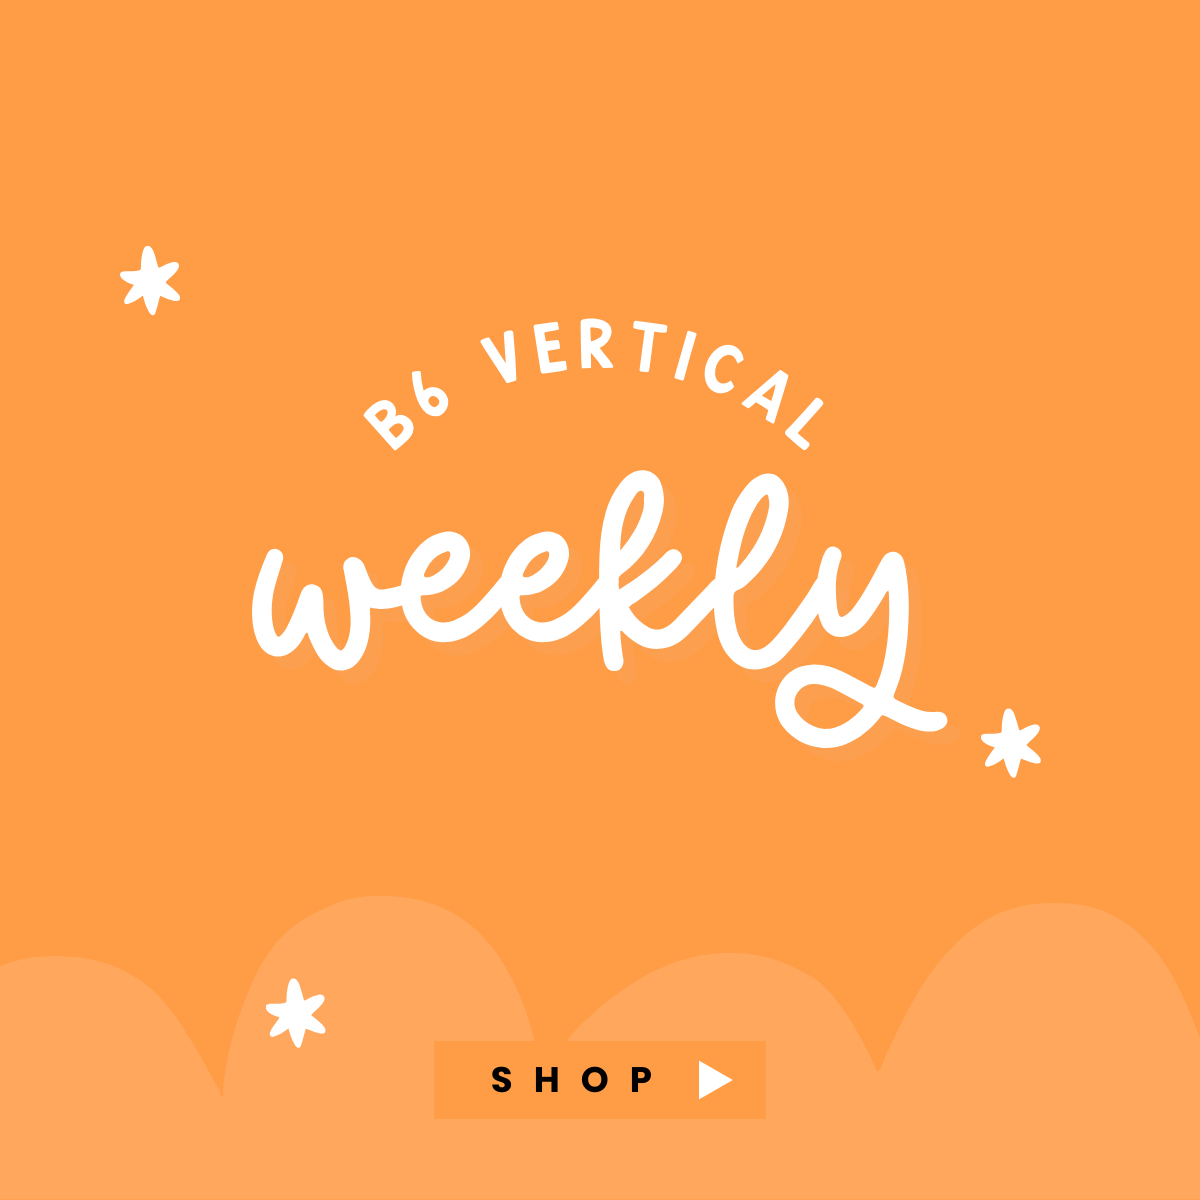 B6 Vertical Weekly